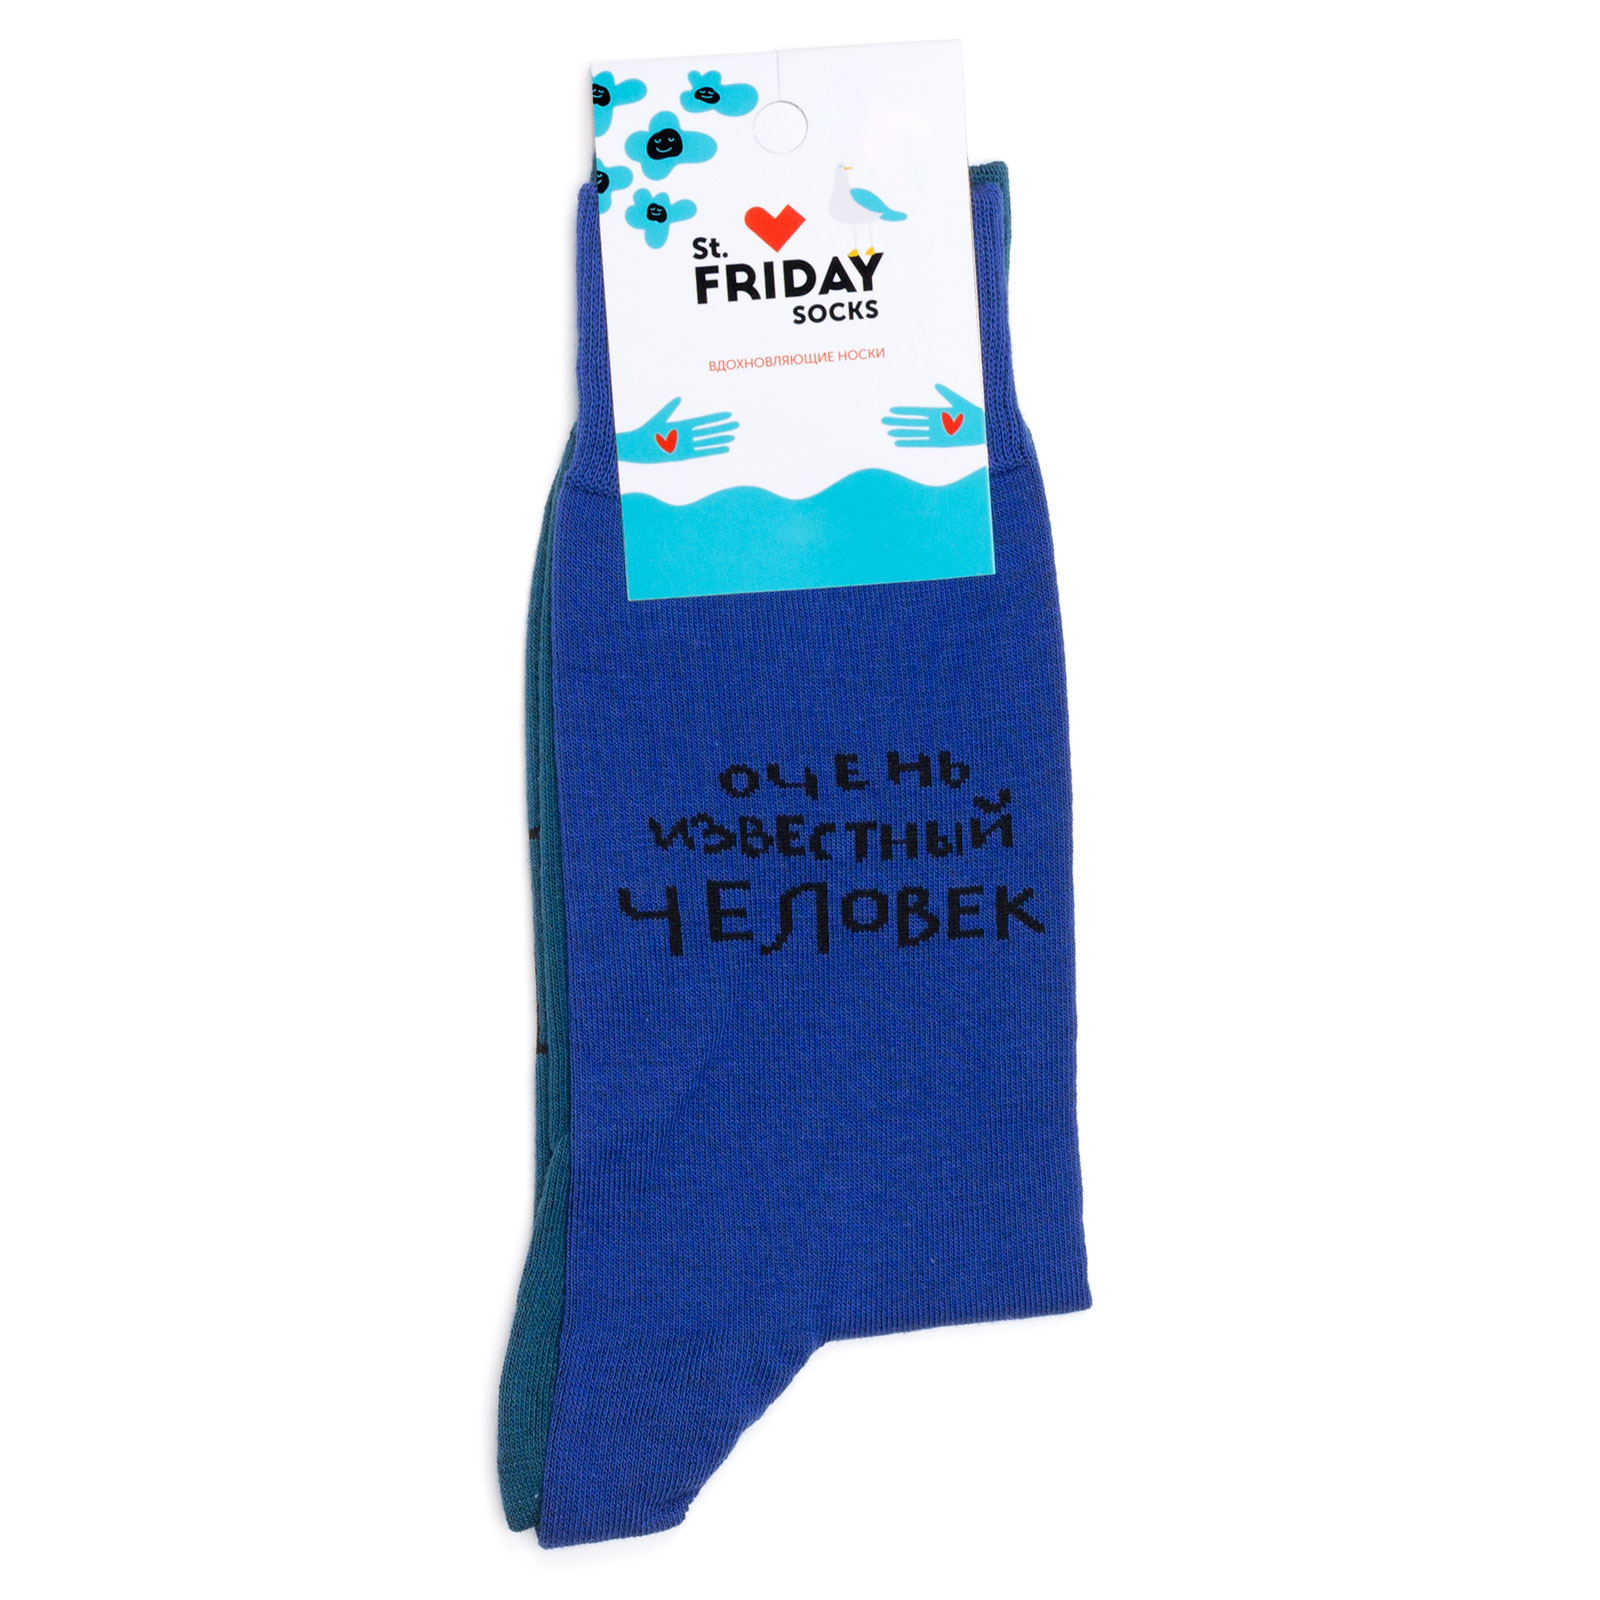 Носки с надписями St.Friday Socks x ЧТАК - Неважно, кто ты - Очень известный человек 42-46